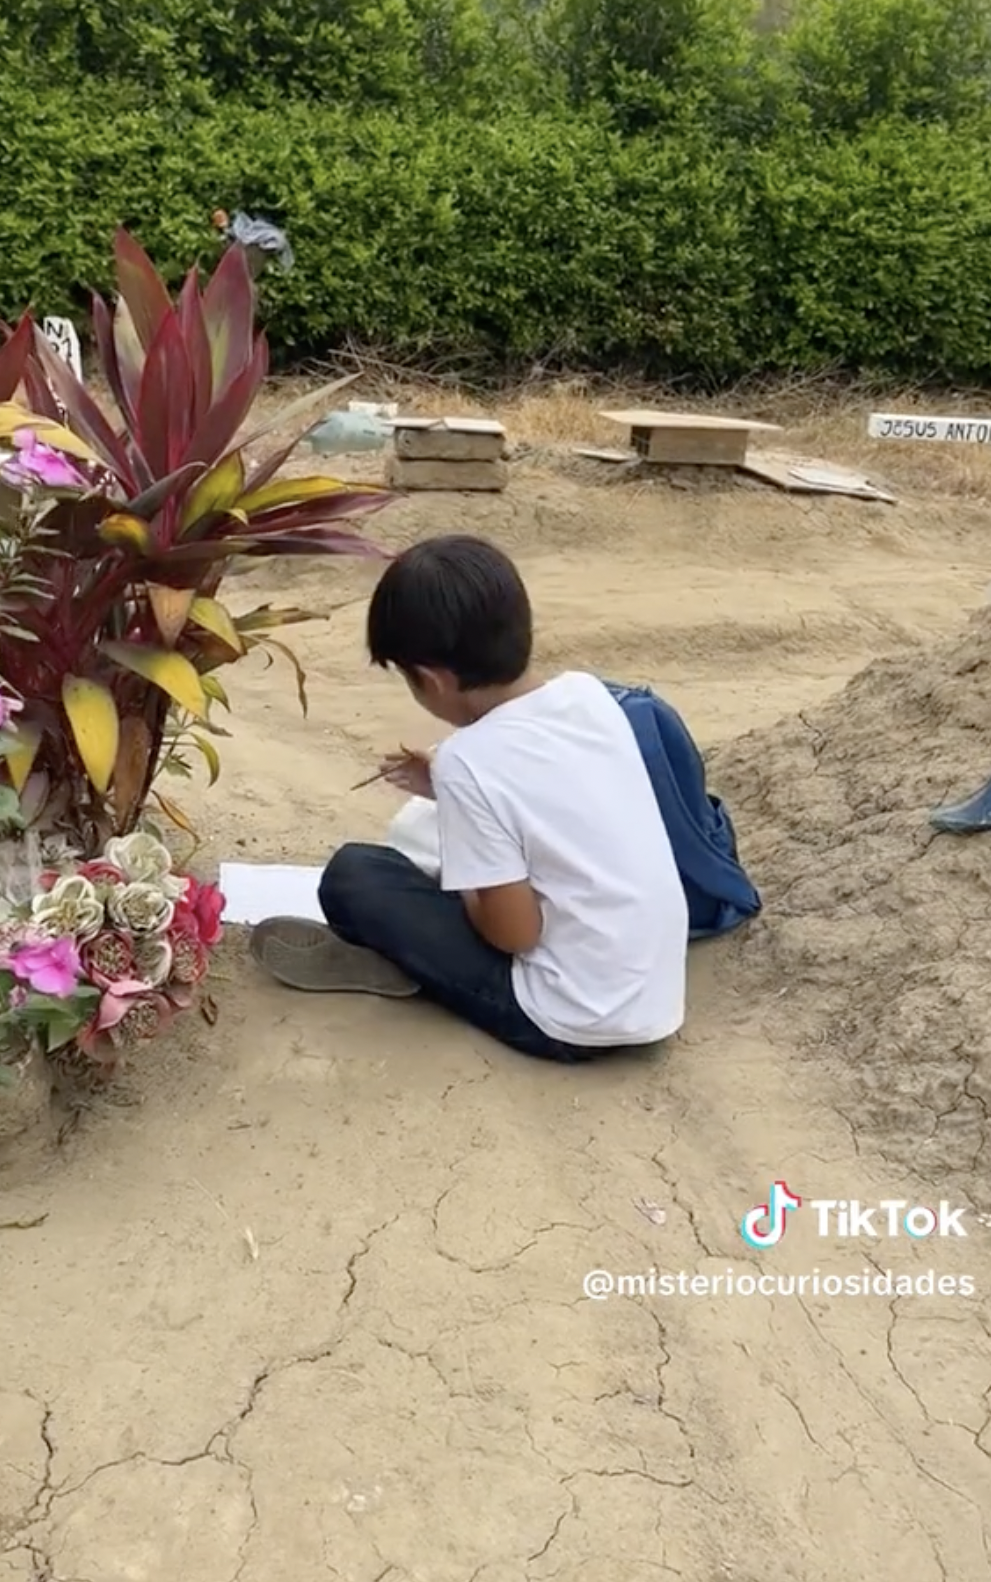 Kike fait ses devoirs sur la tombe de sa défunte mère. | Source : tiktok.com/@misteriocuriosidades